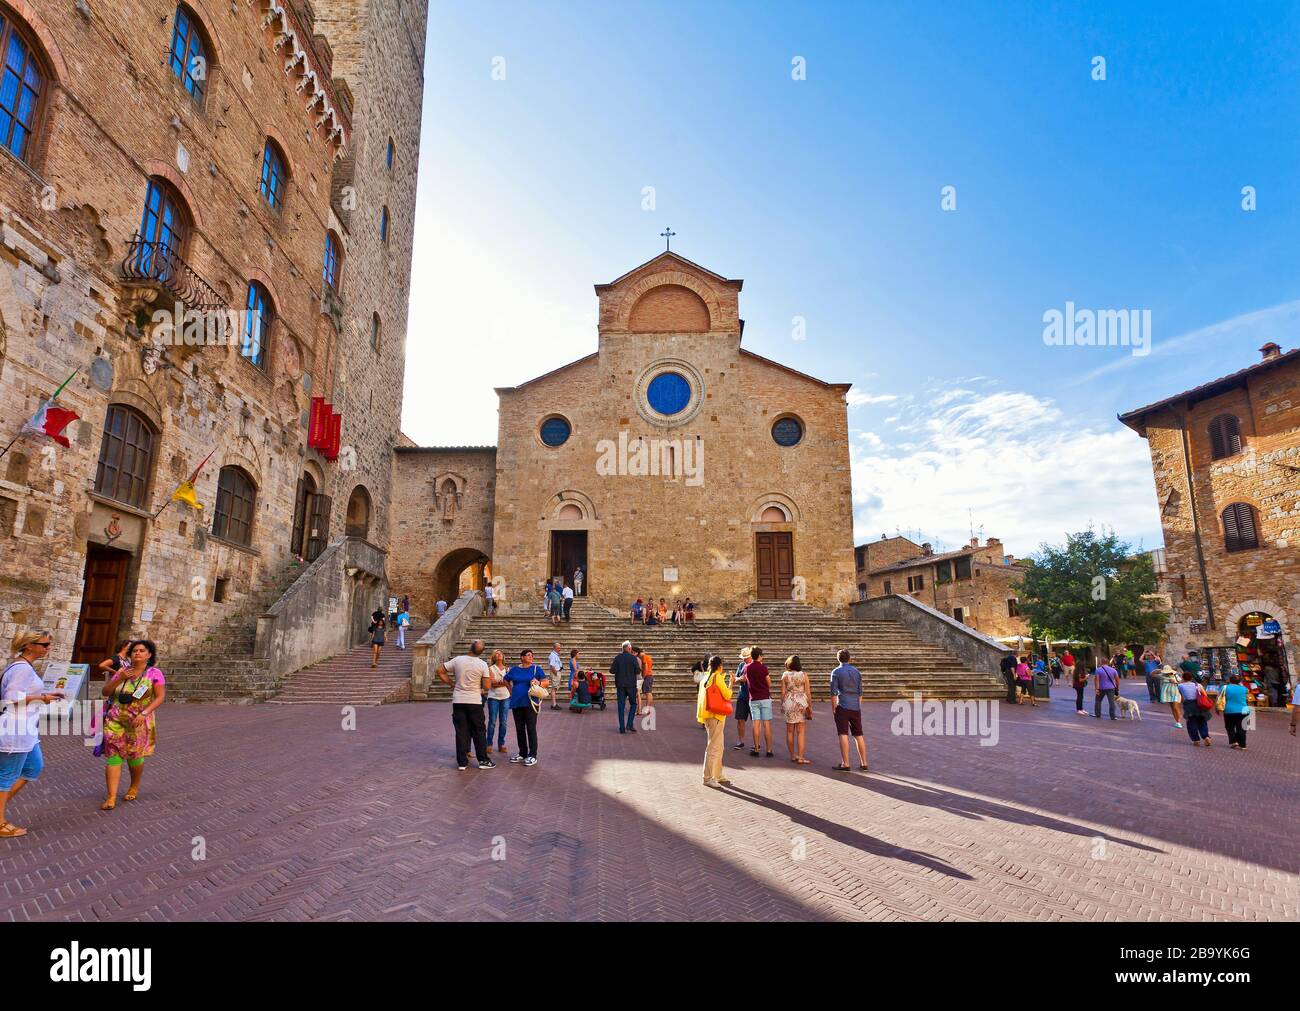 Collégiale de la cathédrale Santa Maria Assunta, San Gimignano, Toscane, Italie, Europe Banque D'Images